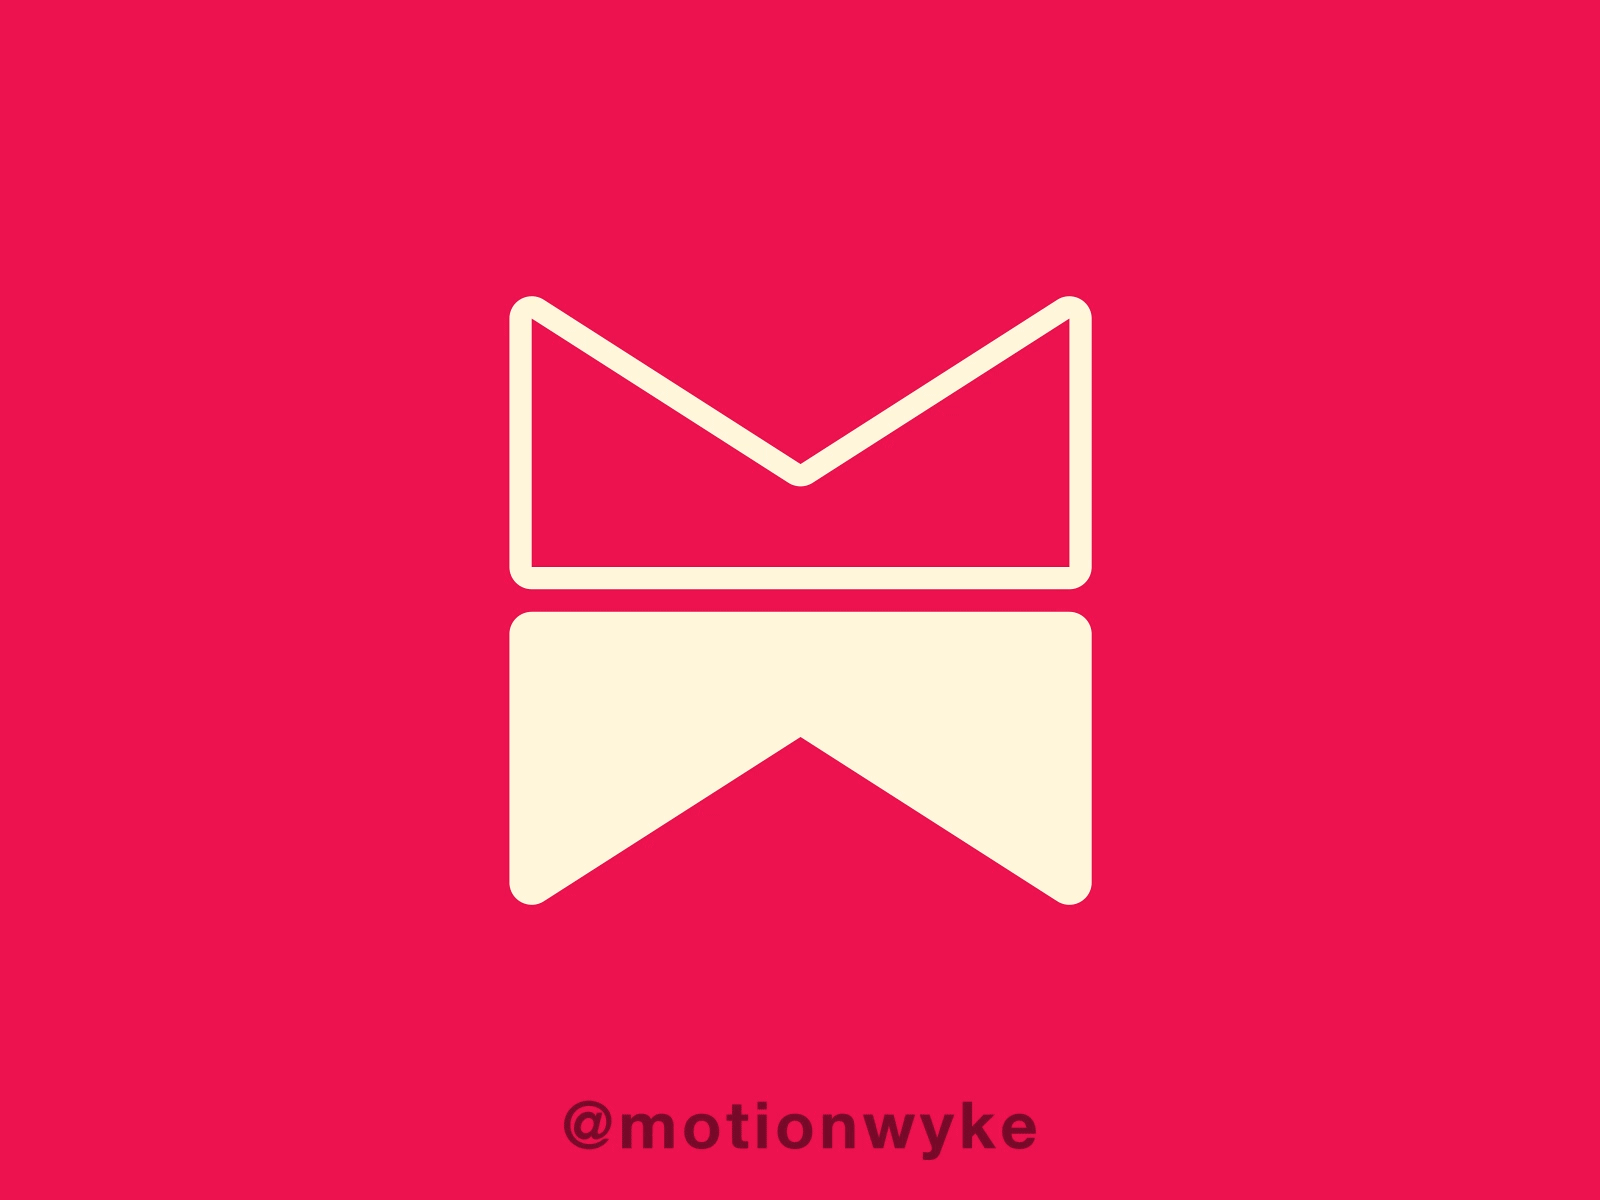 Motionwyke Logo Animation #2 animation design illustration logo logo animation logo design mograph motion design motion graphic motiongraphics